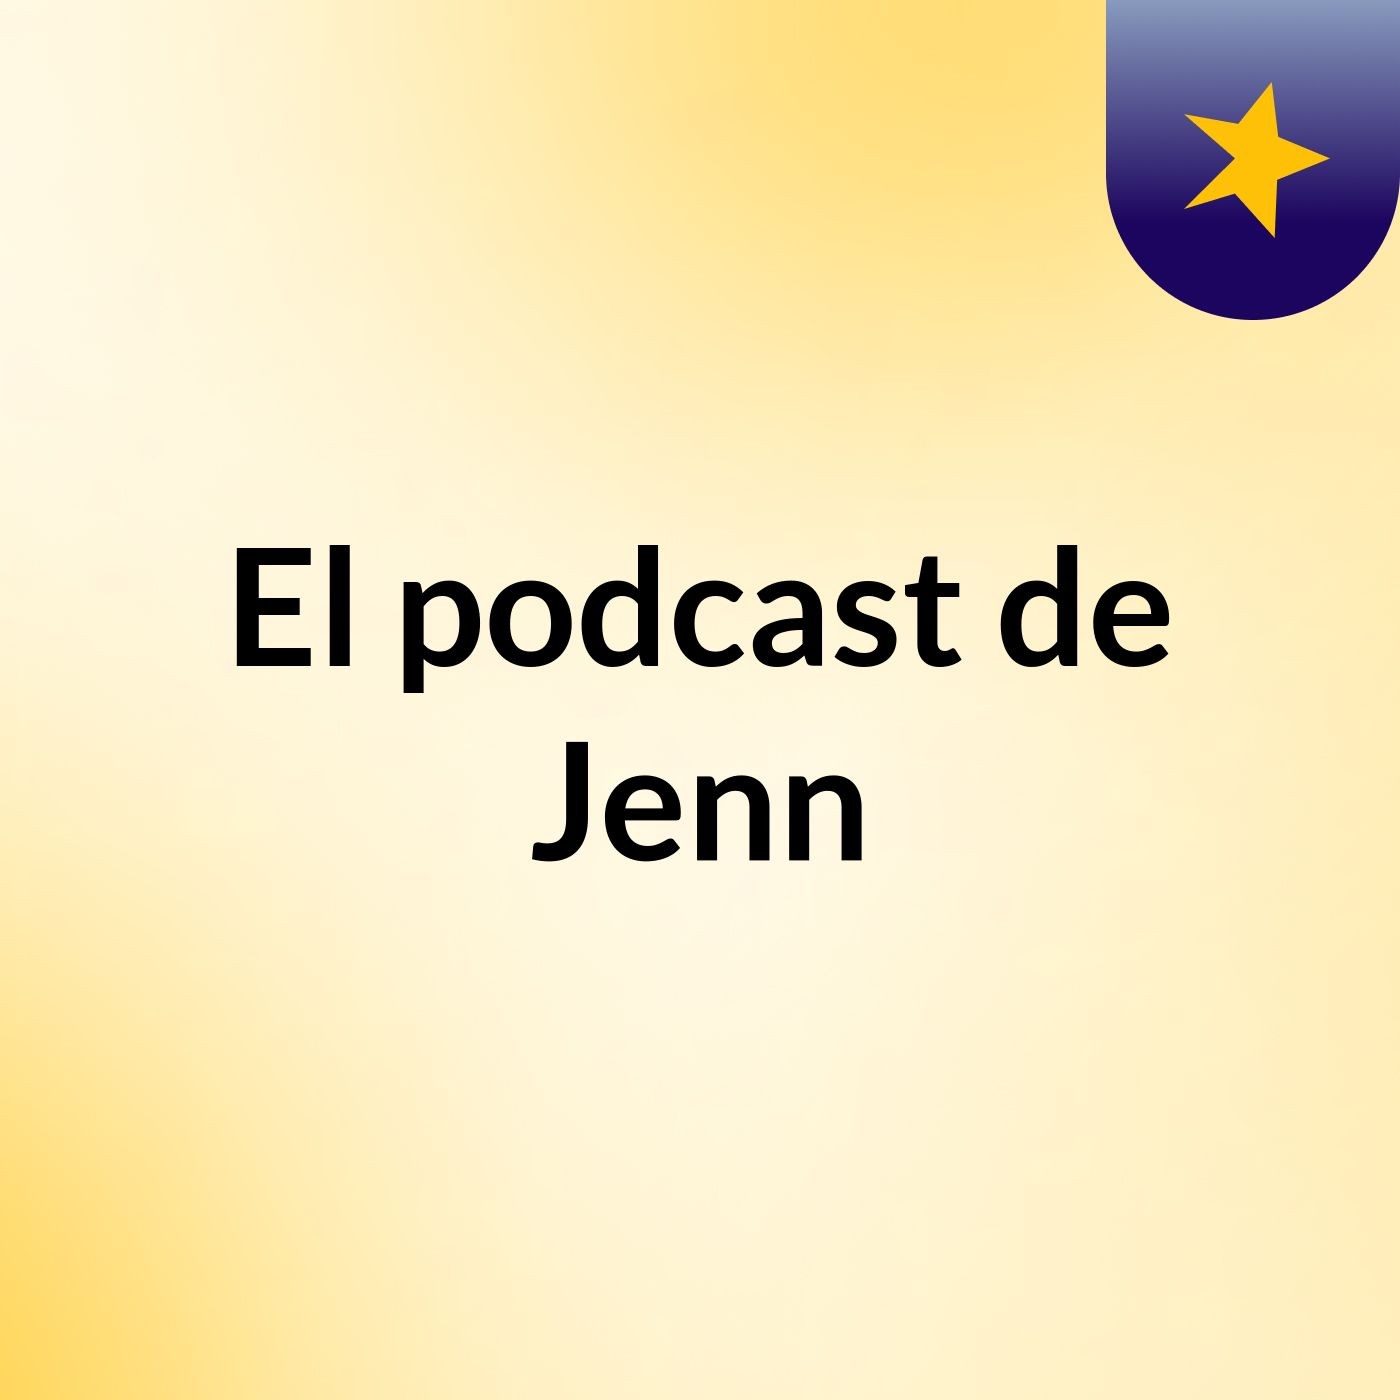 El podcast de Jenn